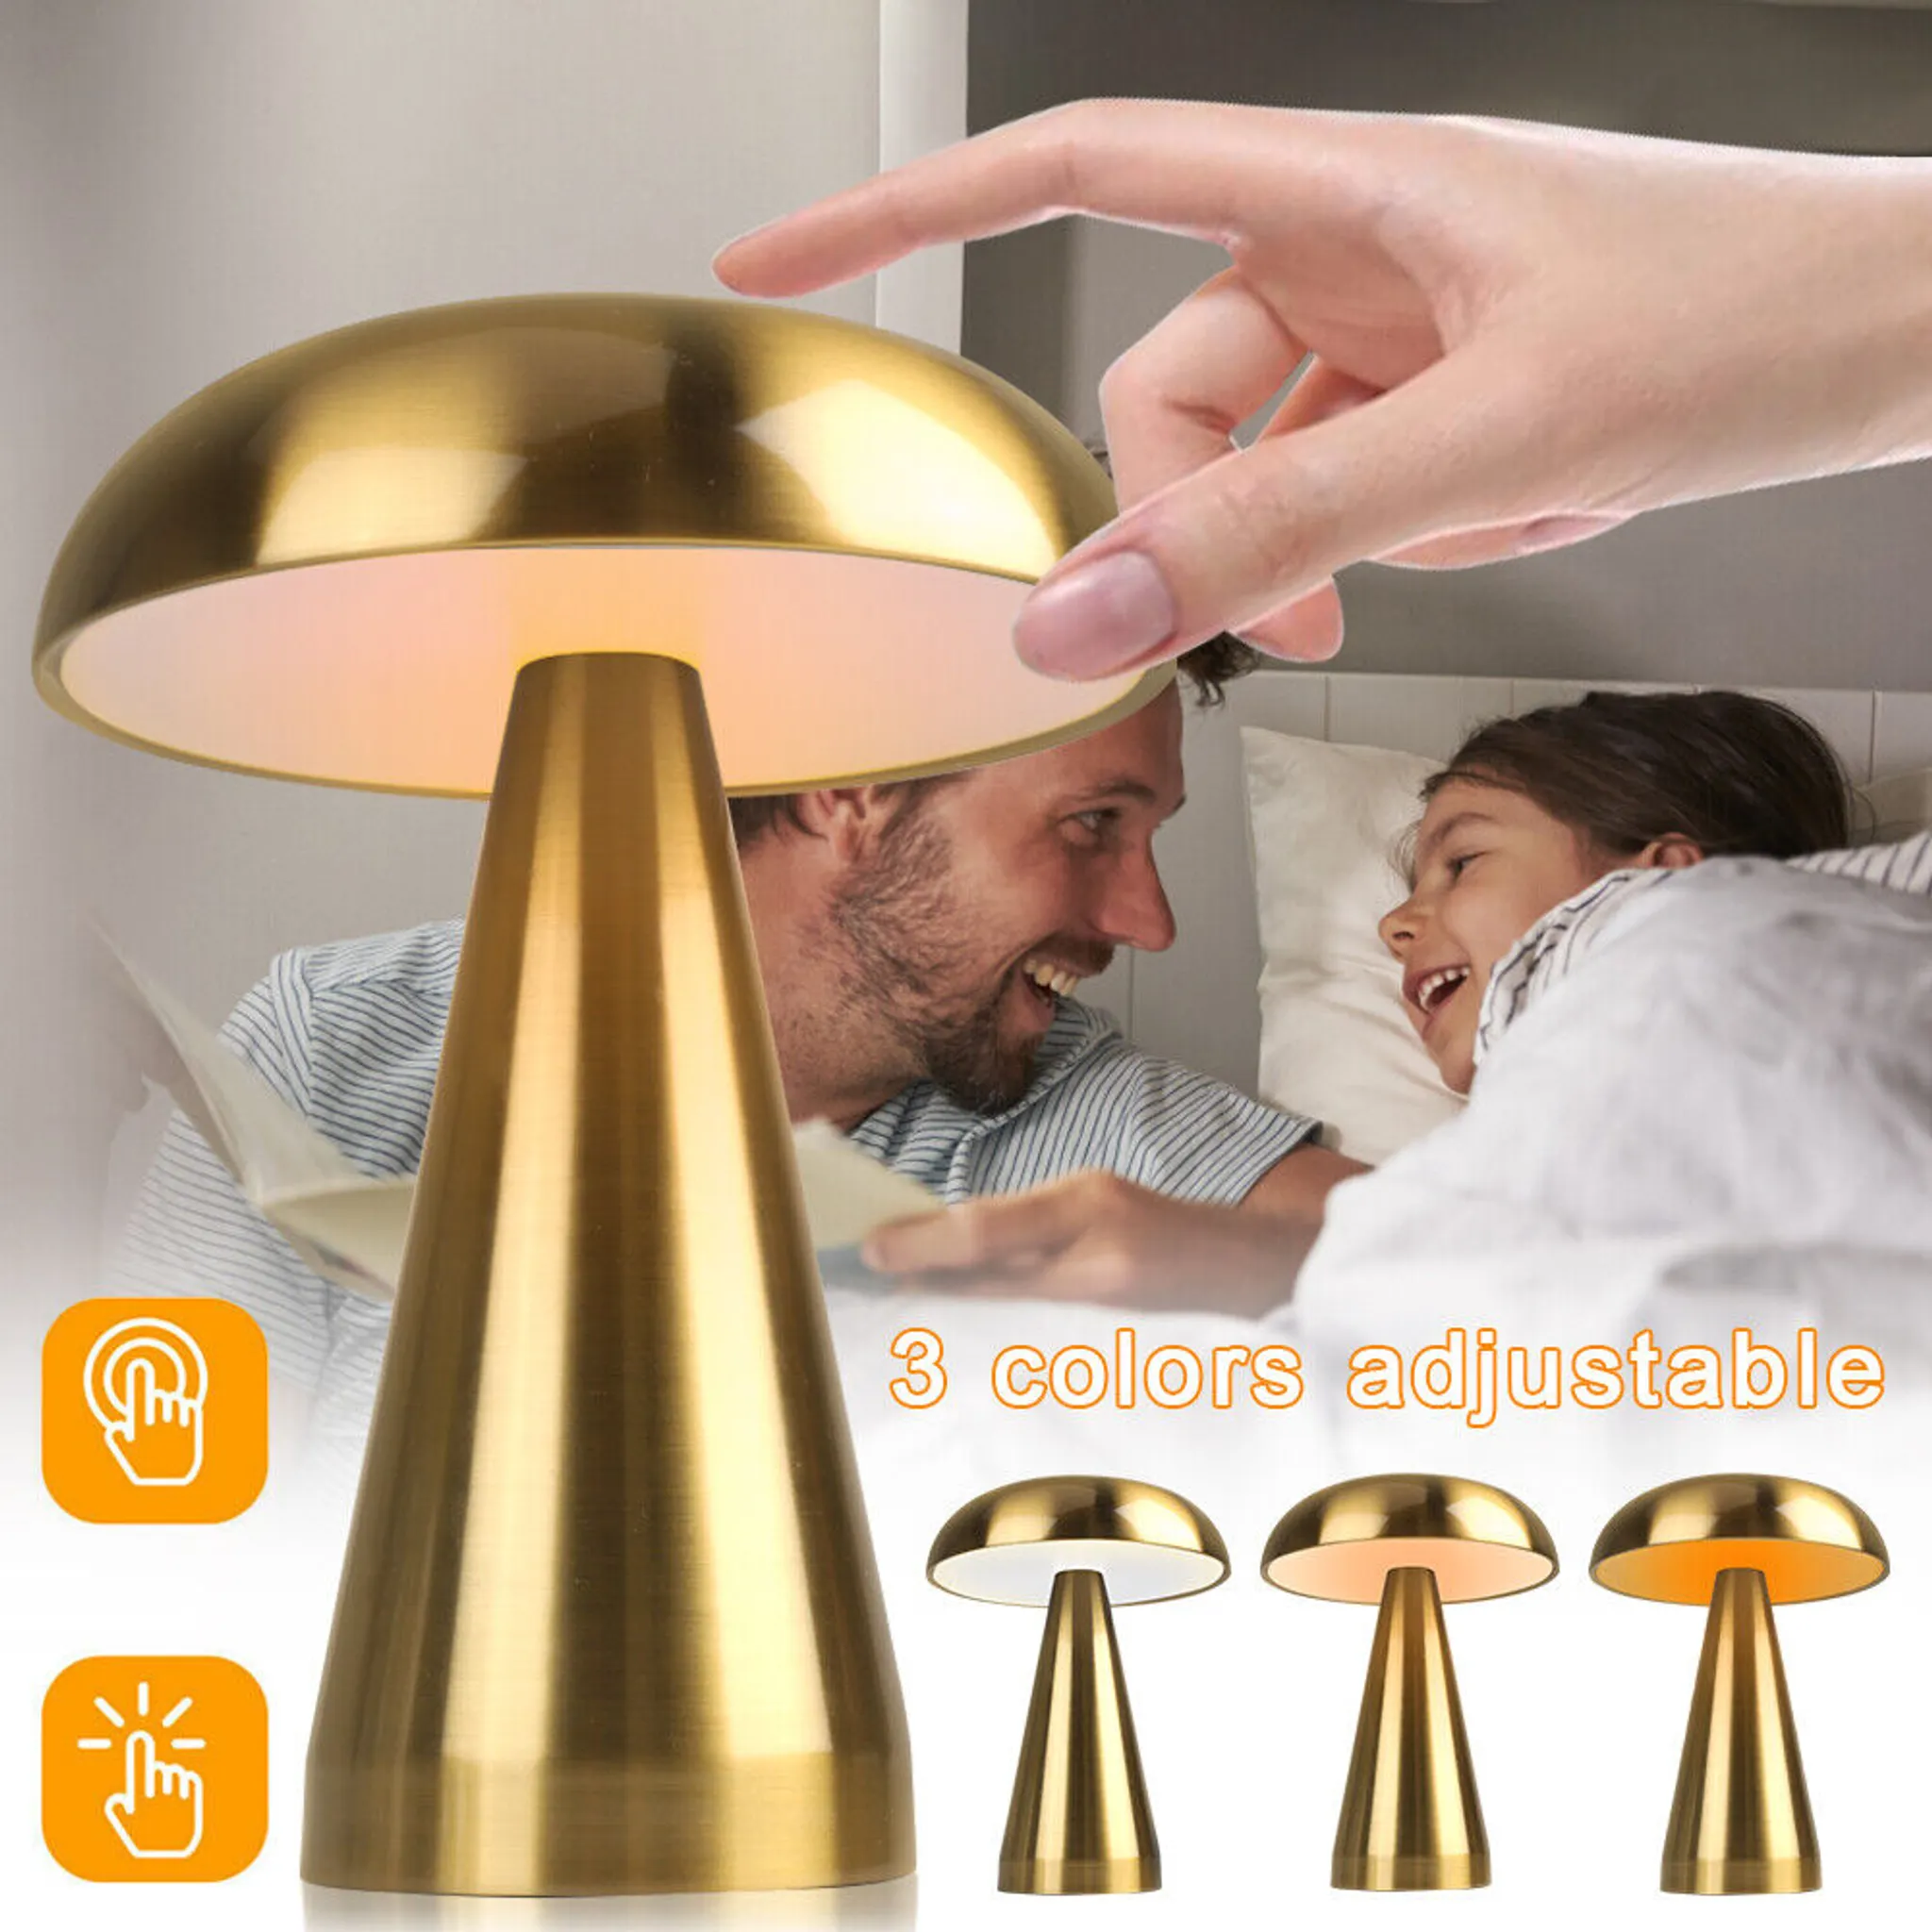 2 Stück tragbare kabellose LED-Tischlampe mit Touch-Sensor, Pilz, Gold,  batteriebetriebene Lampe, 3 Farben, dimmbare und verstellbare  wiederaufladbare